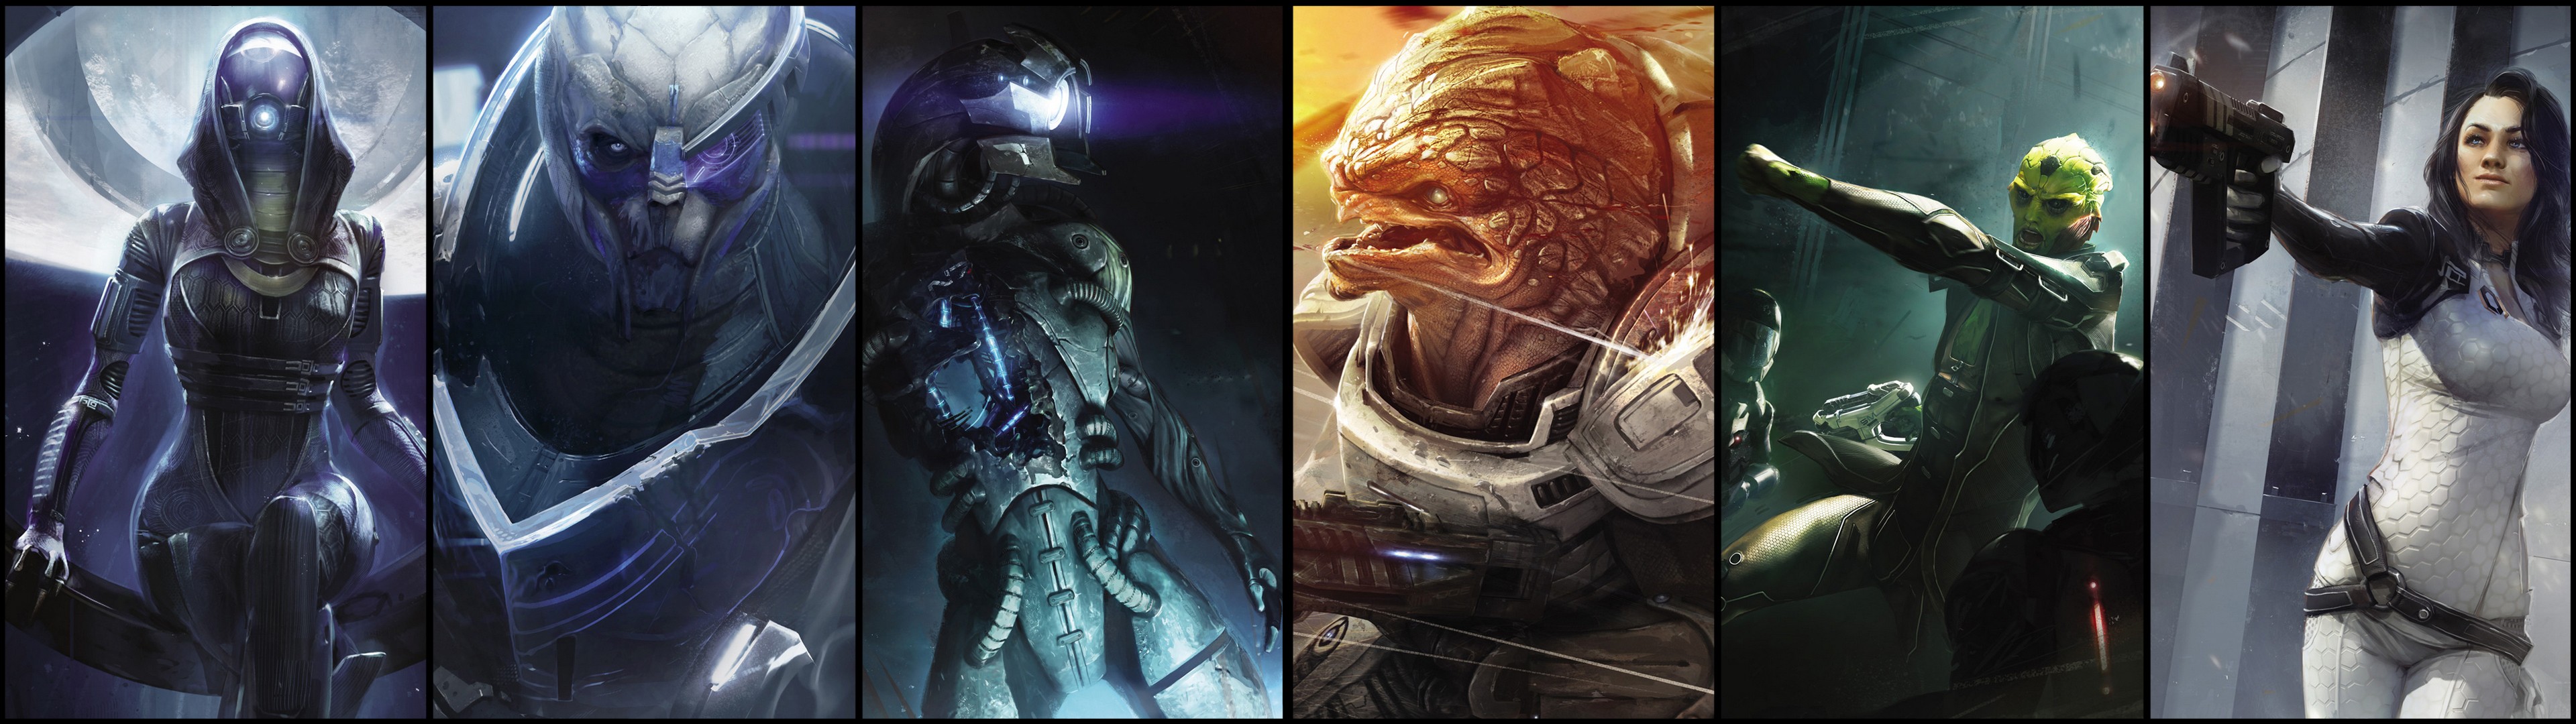 Garrus Vakarian Legion Mass Effect Mass Effect Miranda Lawson Thane Krios TaliZorah Mass Effect 2 Gr 3840x1080